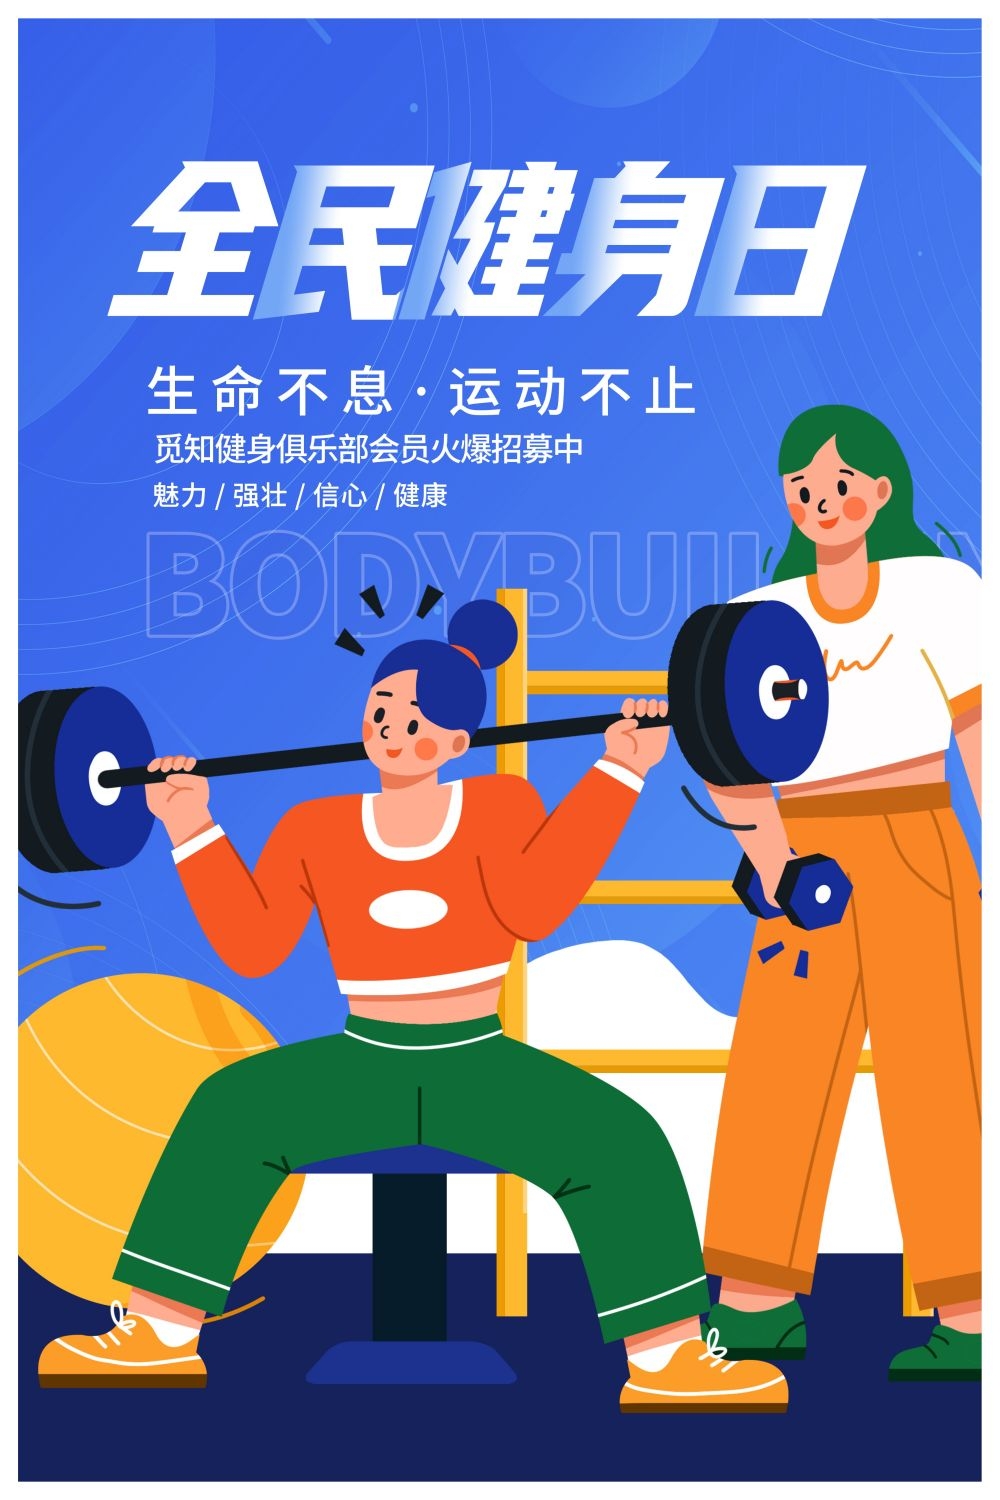 私教训练营健身私教运动健身亲子运动会海报20